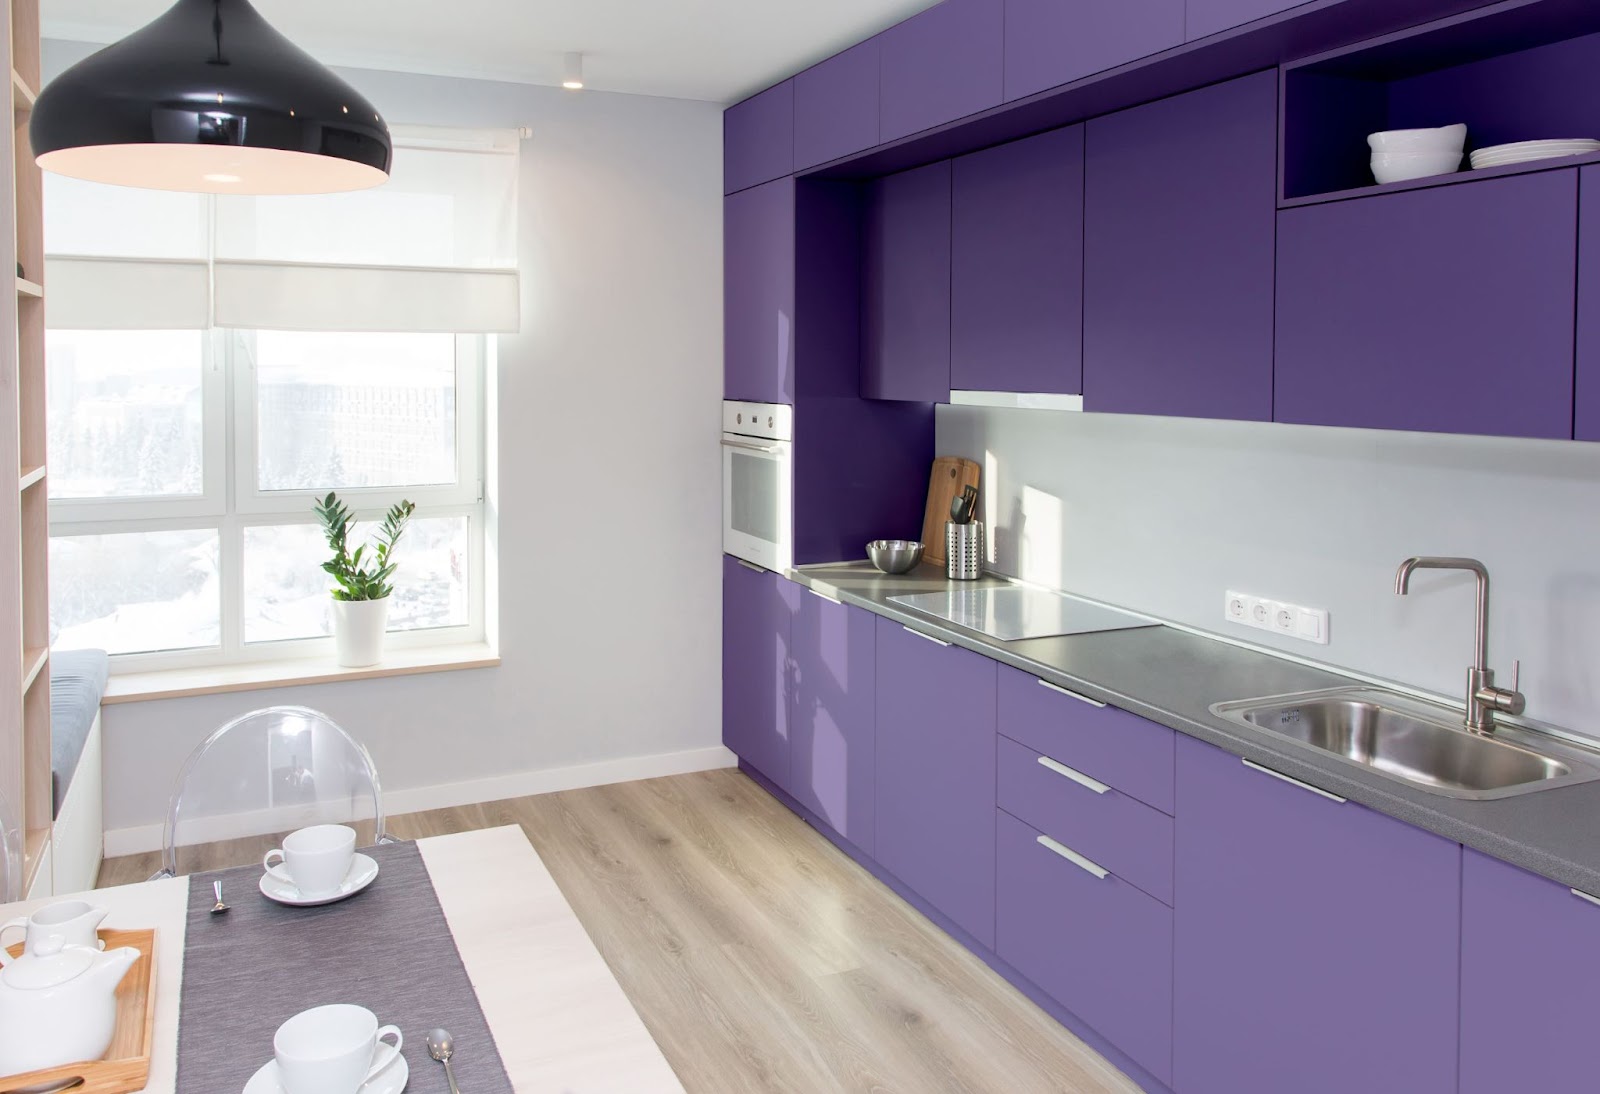 kitchen interior design for small spaces